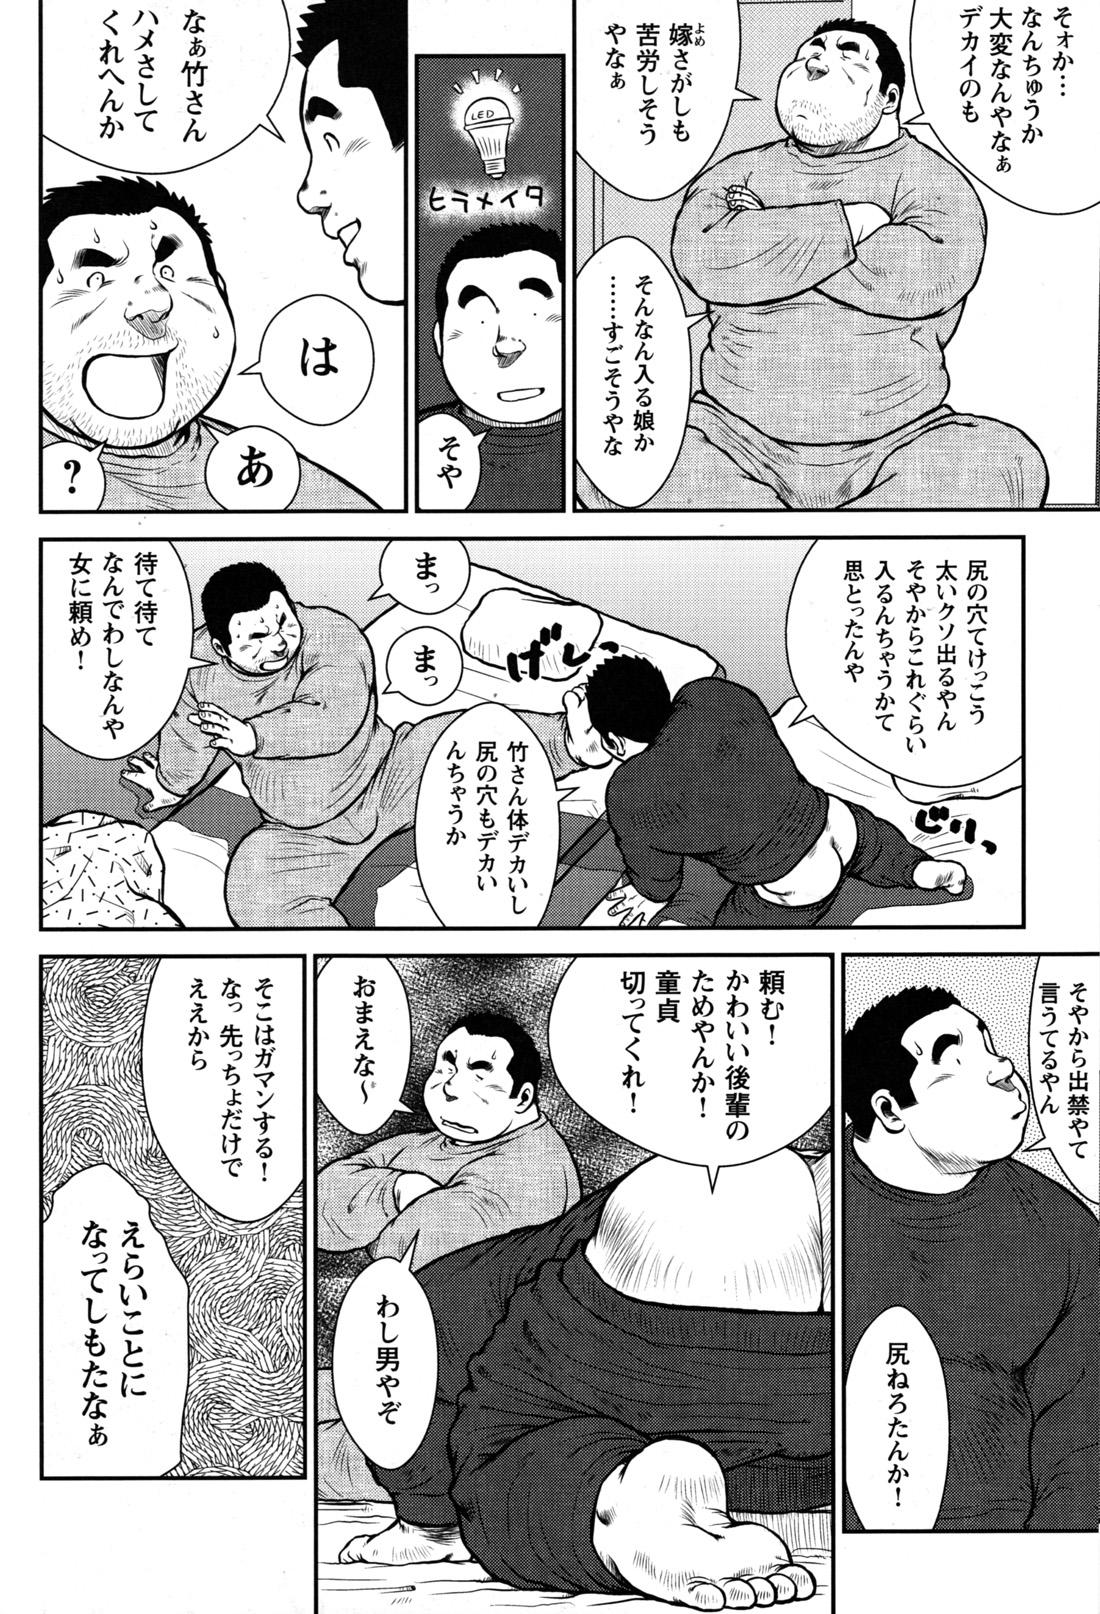 Comic G-men Gaho No.09 Gacchibi Zeme 108